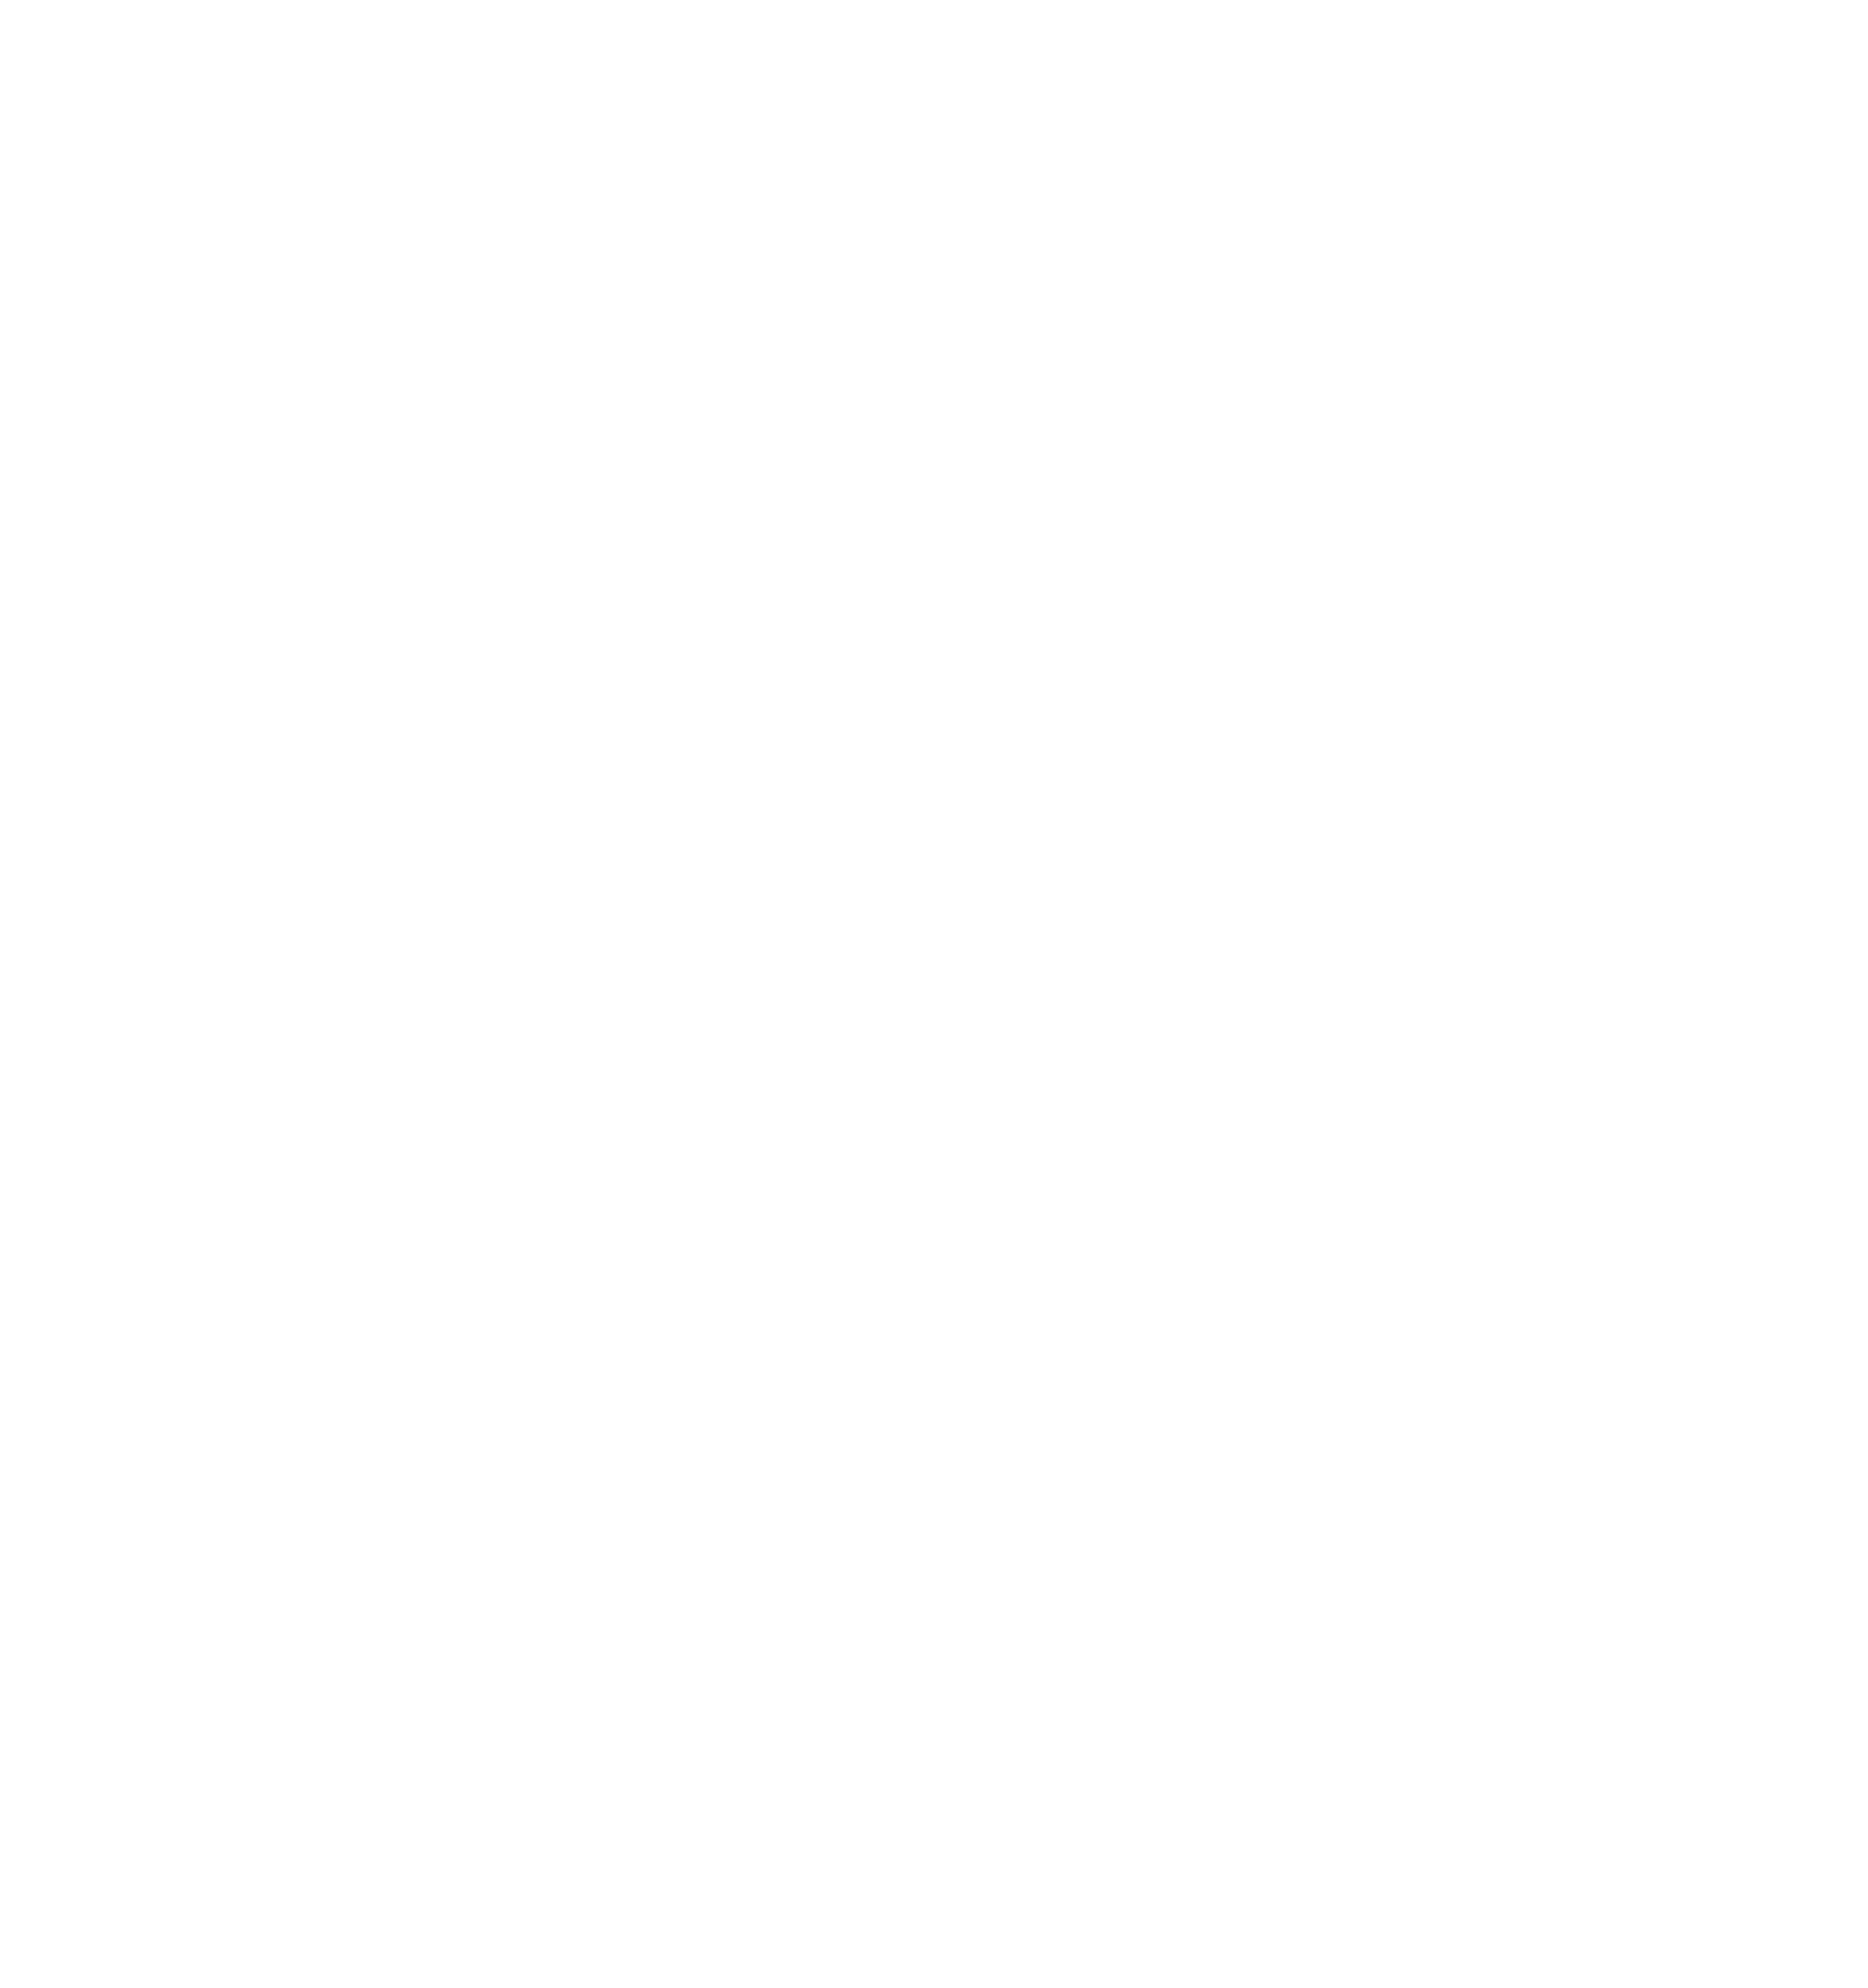 Mare Island